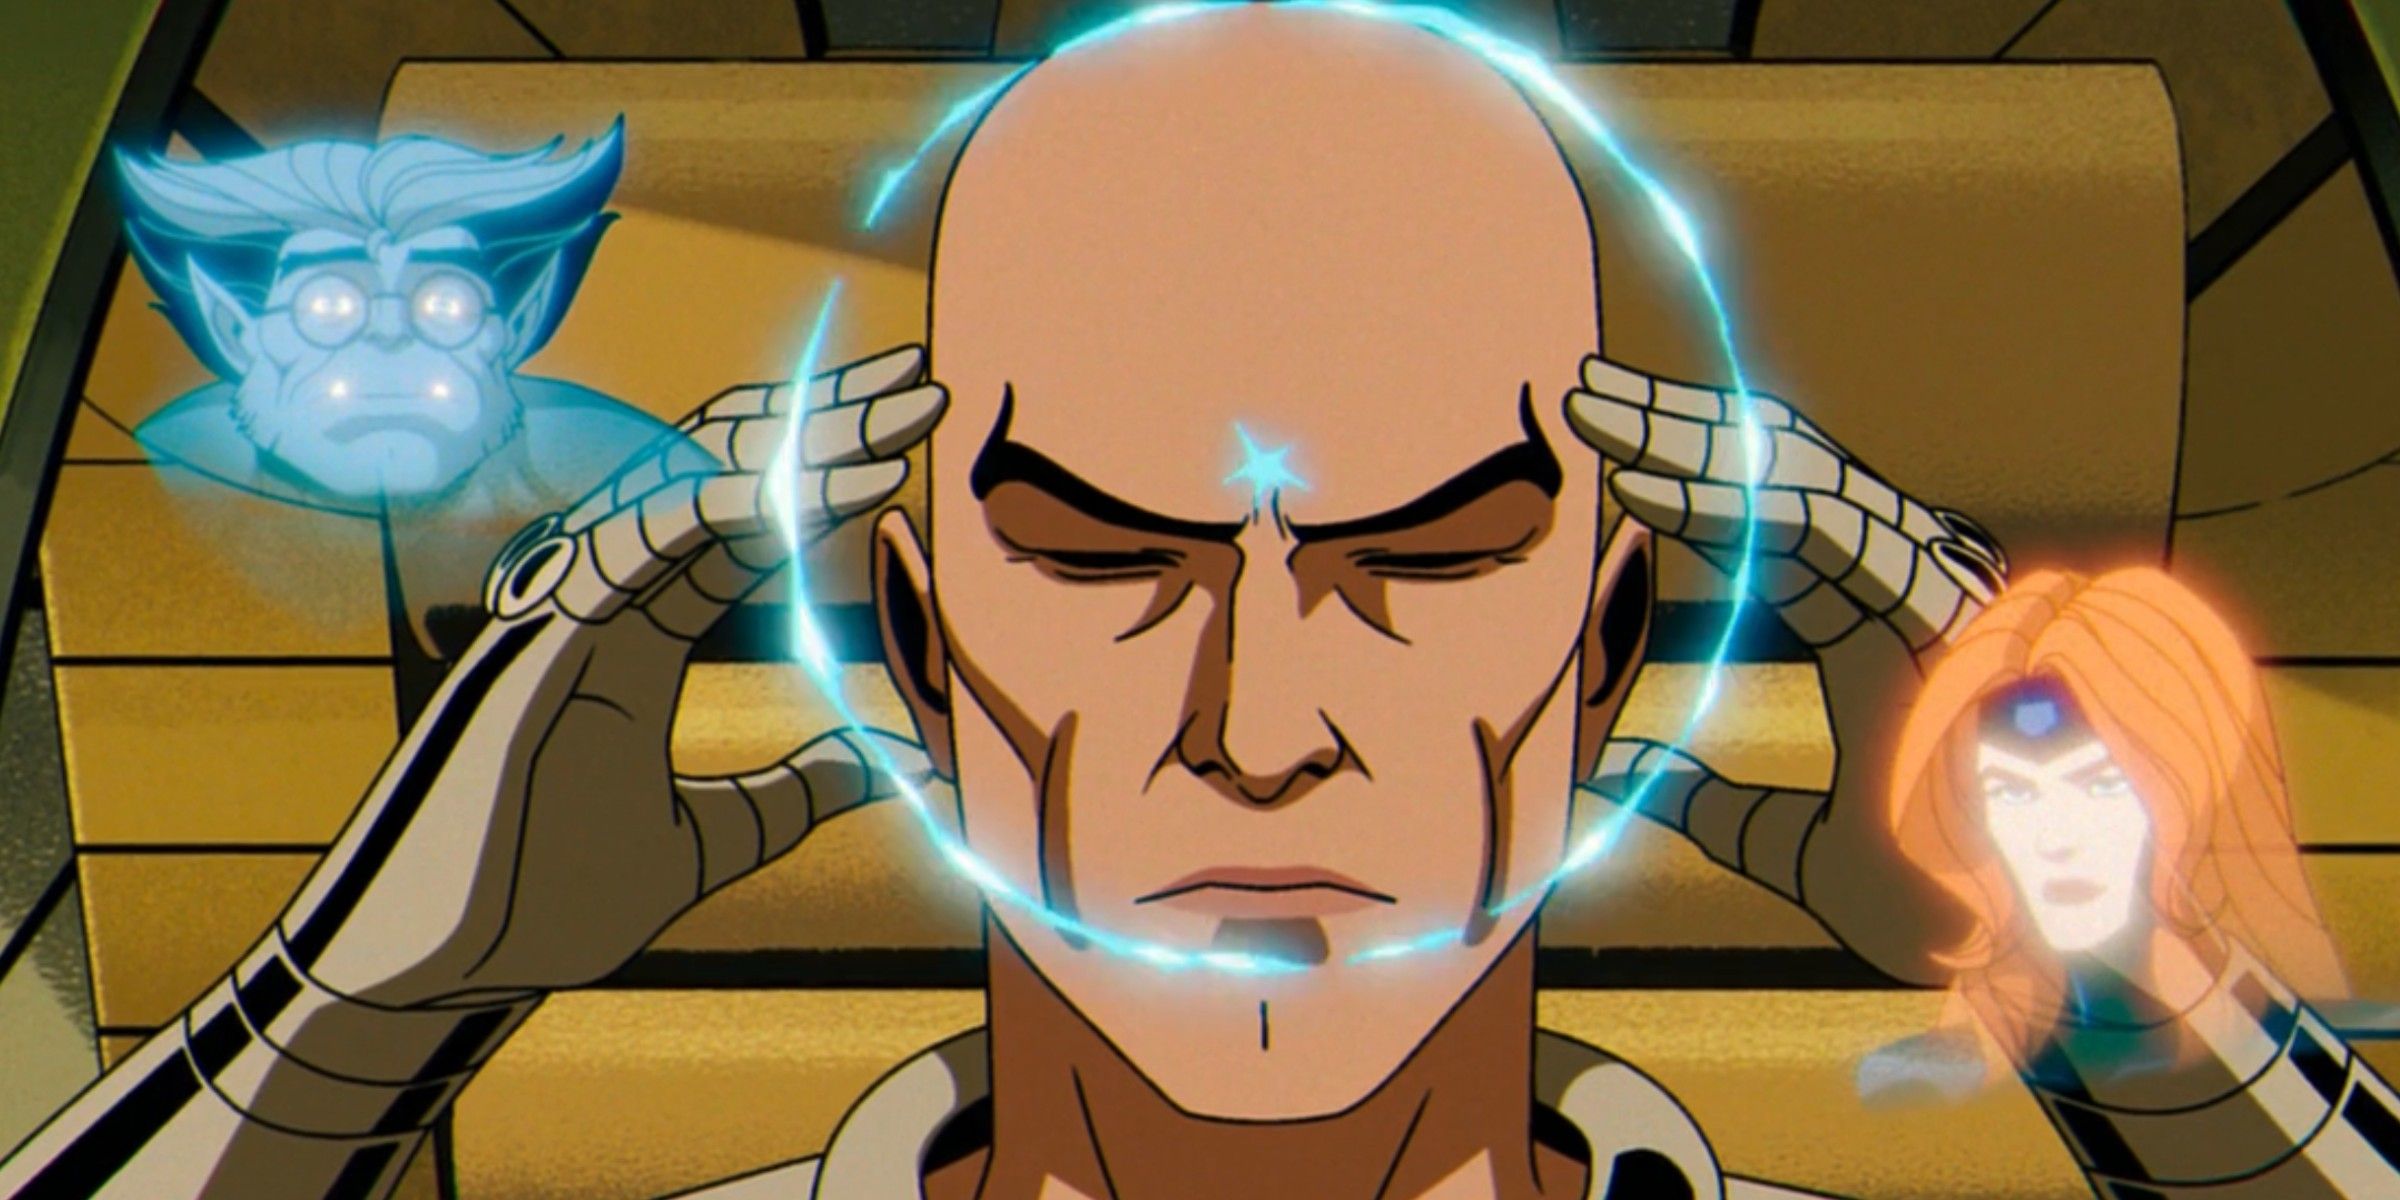 Charles Xavier calls The X-Men in X-Men 97 episode 8